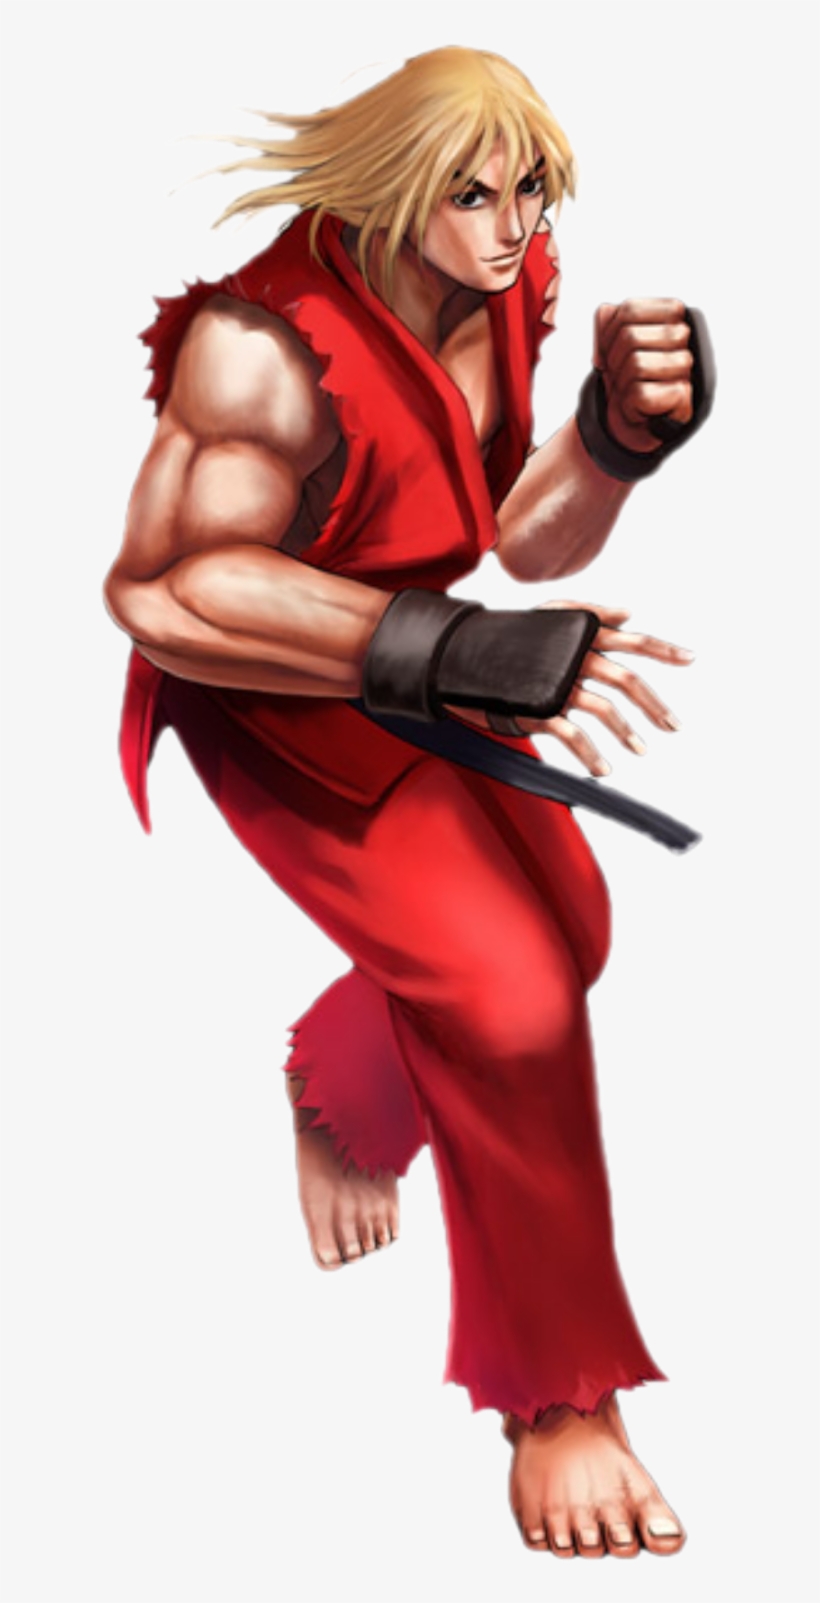 Ken Masters - Ken Street Fighter 4 Png, transparent png #3325588